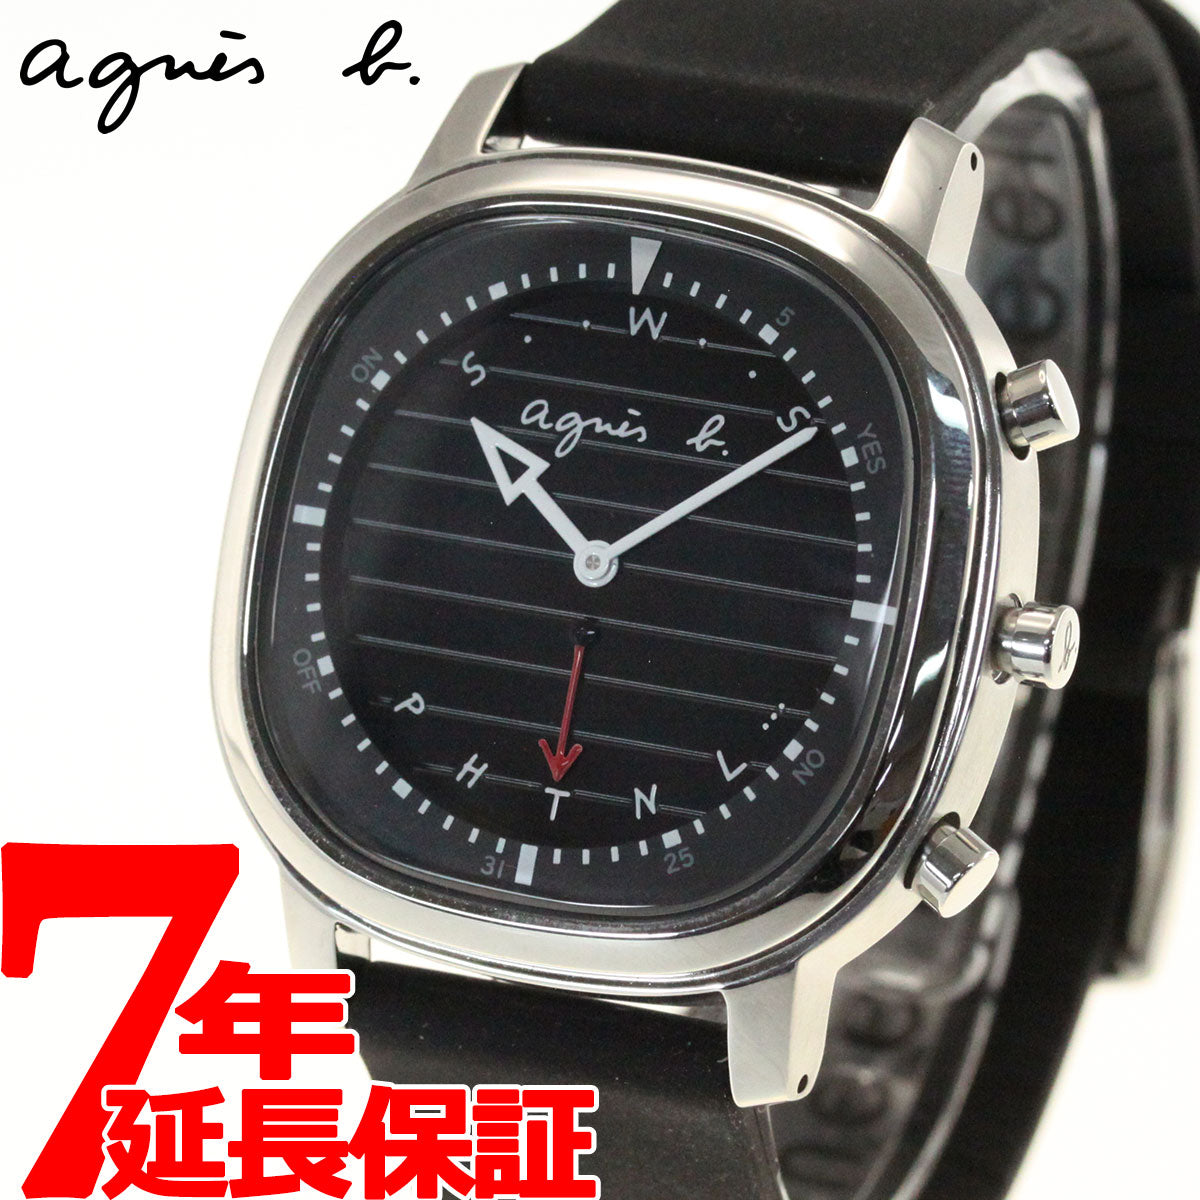 【新品未使用】agnes b. メンズ 腕時計 FCRB402